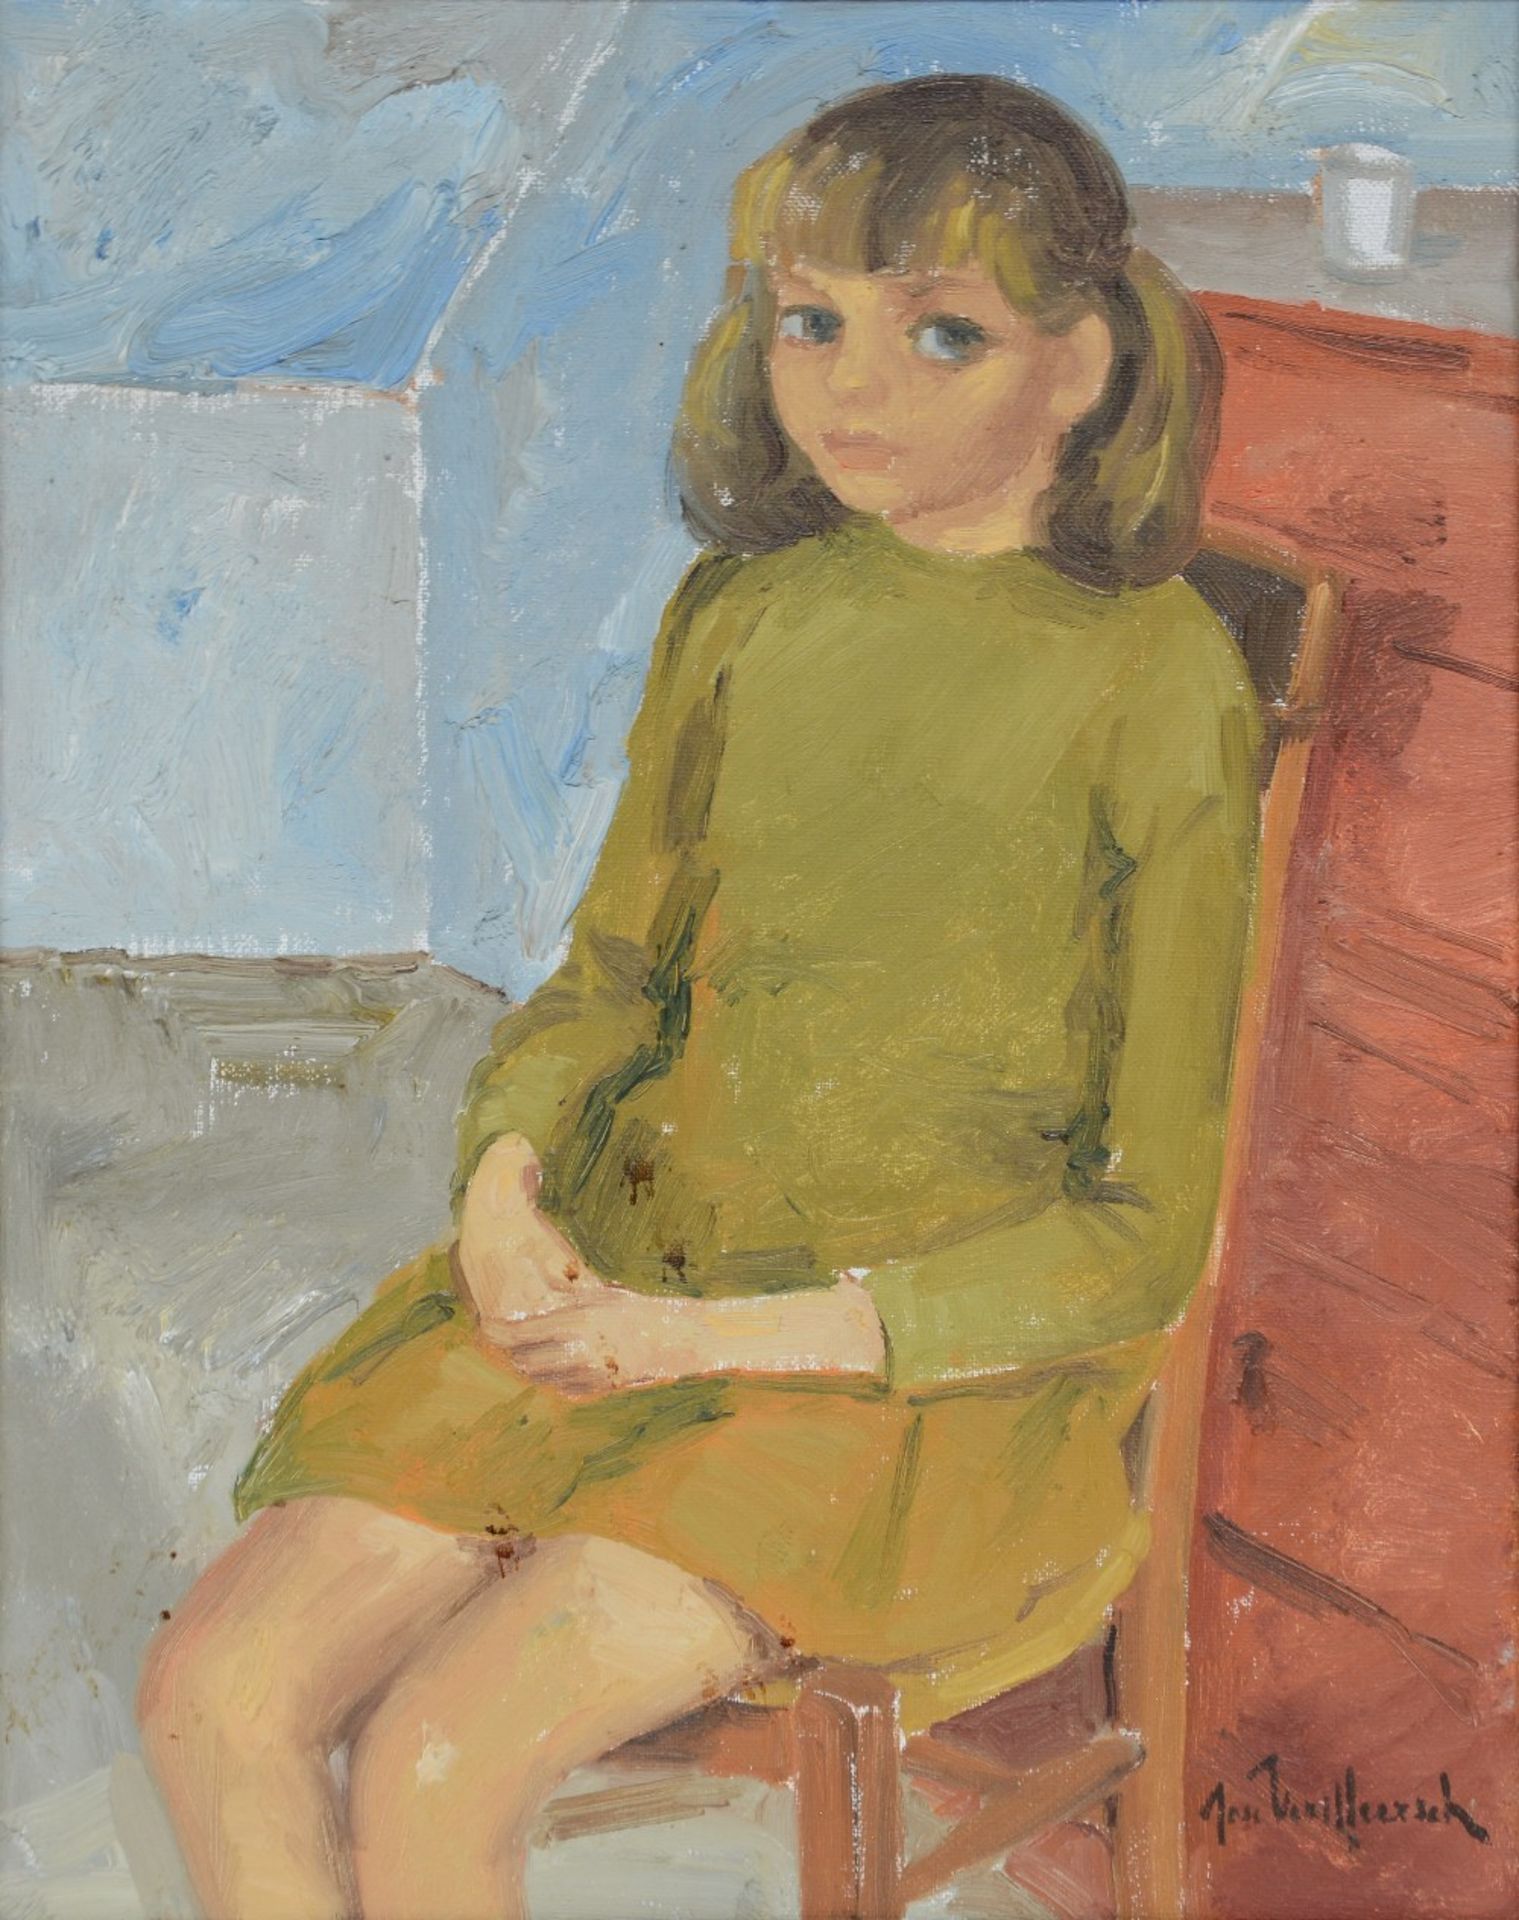 Vermeersch J., portrait of a girl (Vera), oil on canvas, 40 x 50 cm